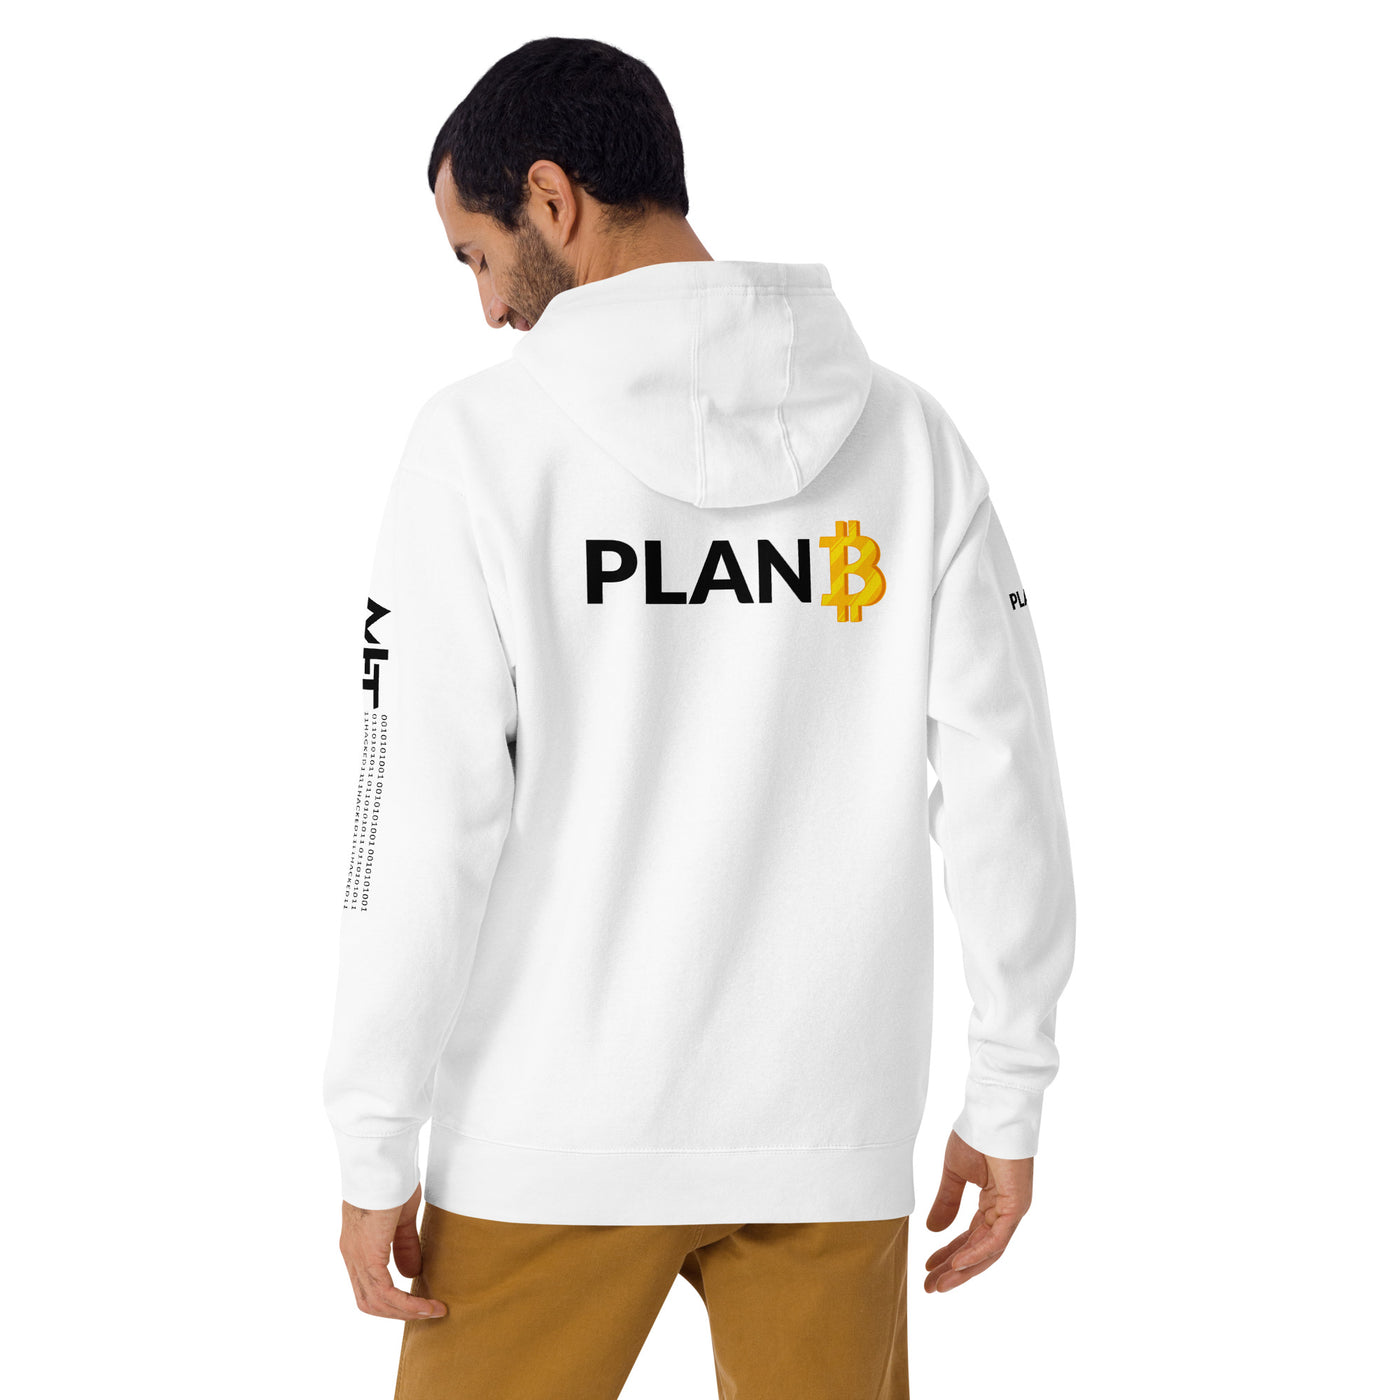 Plan B v1 - Unisex Hoodie (back print)